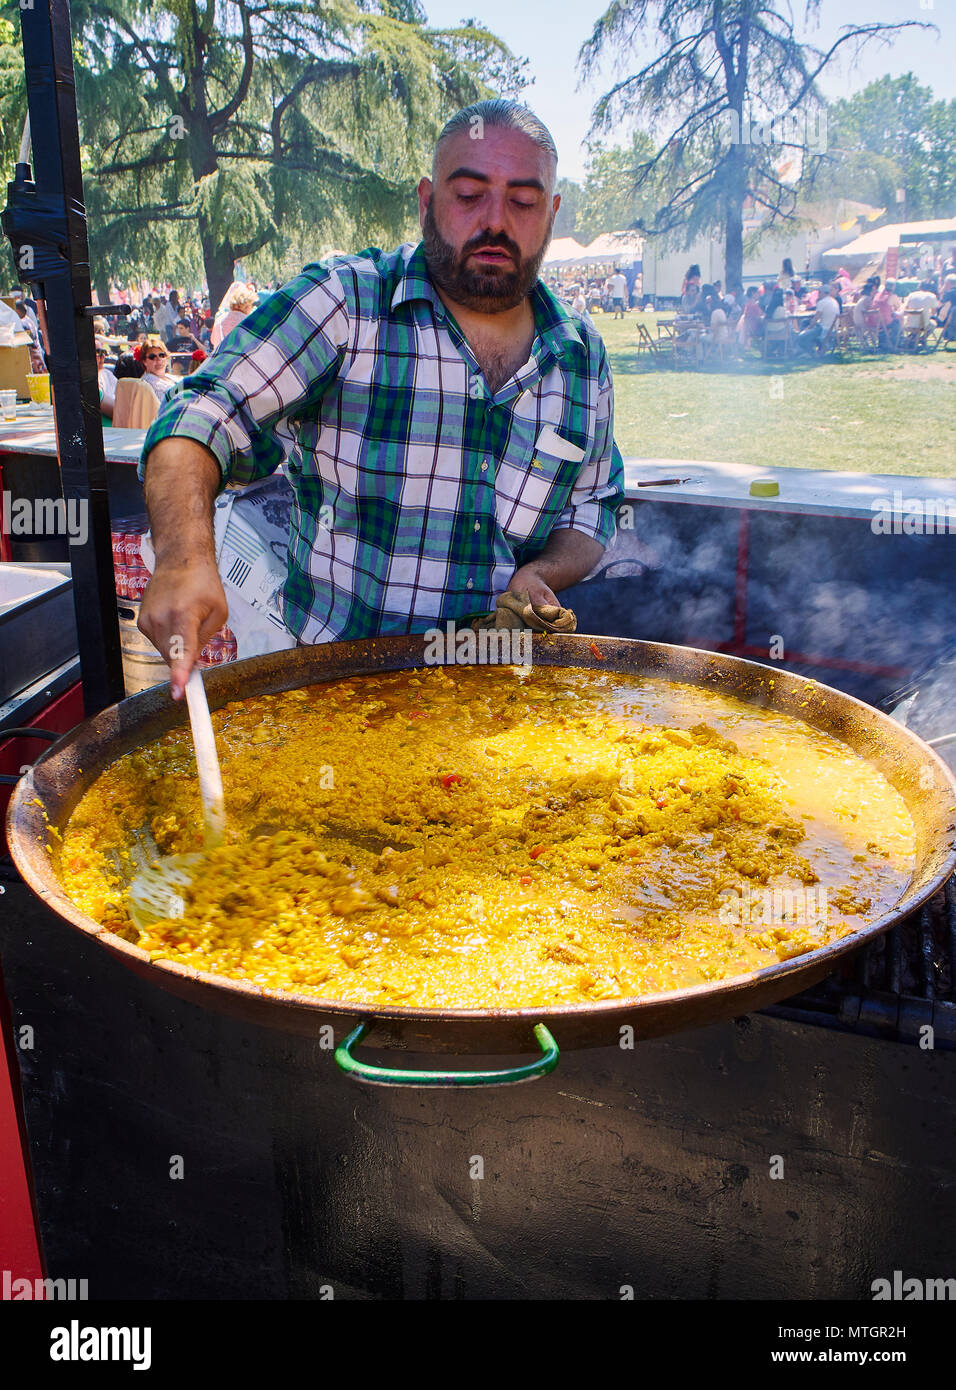 Madrid, Espagne - 15 mai 2018. La Paella espagnole en cours. Un cuisinier cuisine une paella à la foire gastronomique. Banque D'Images